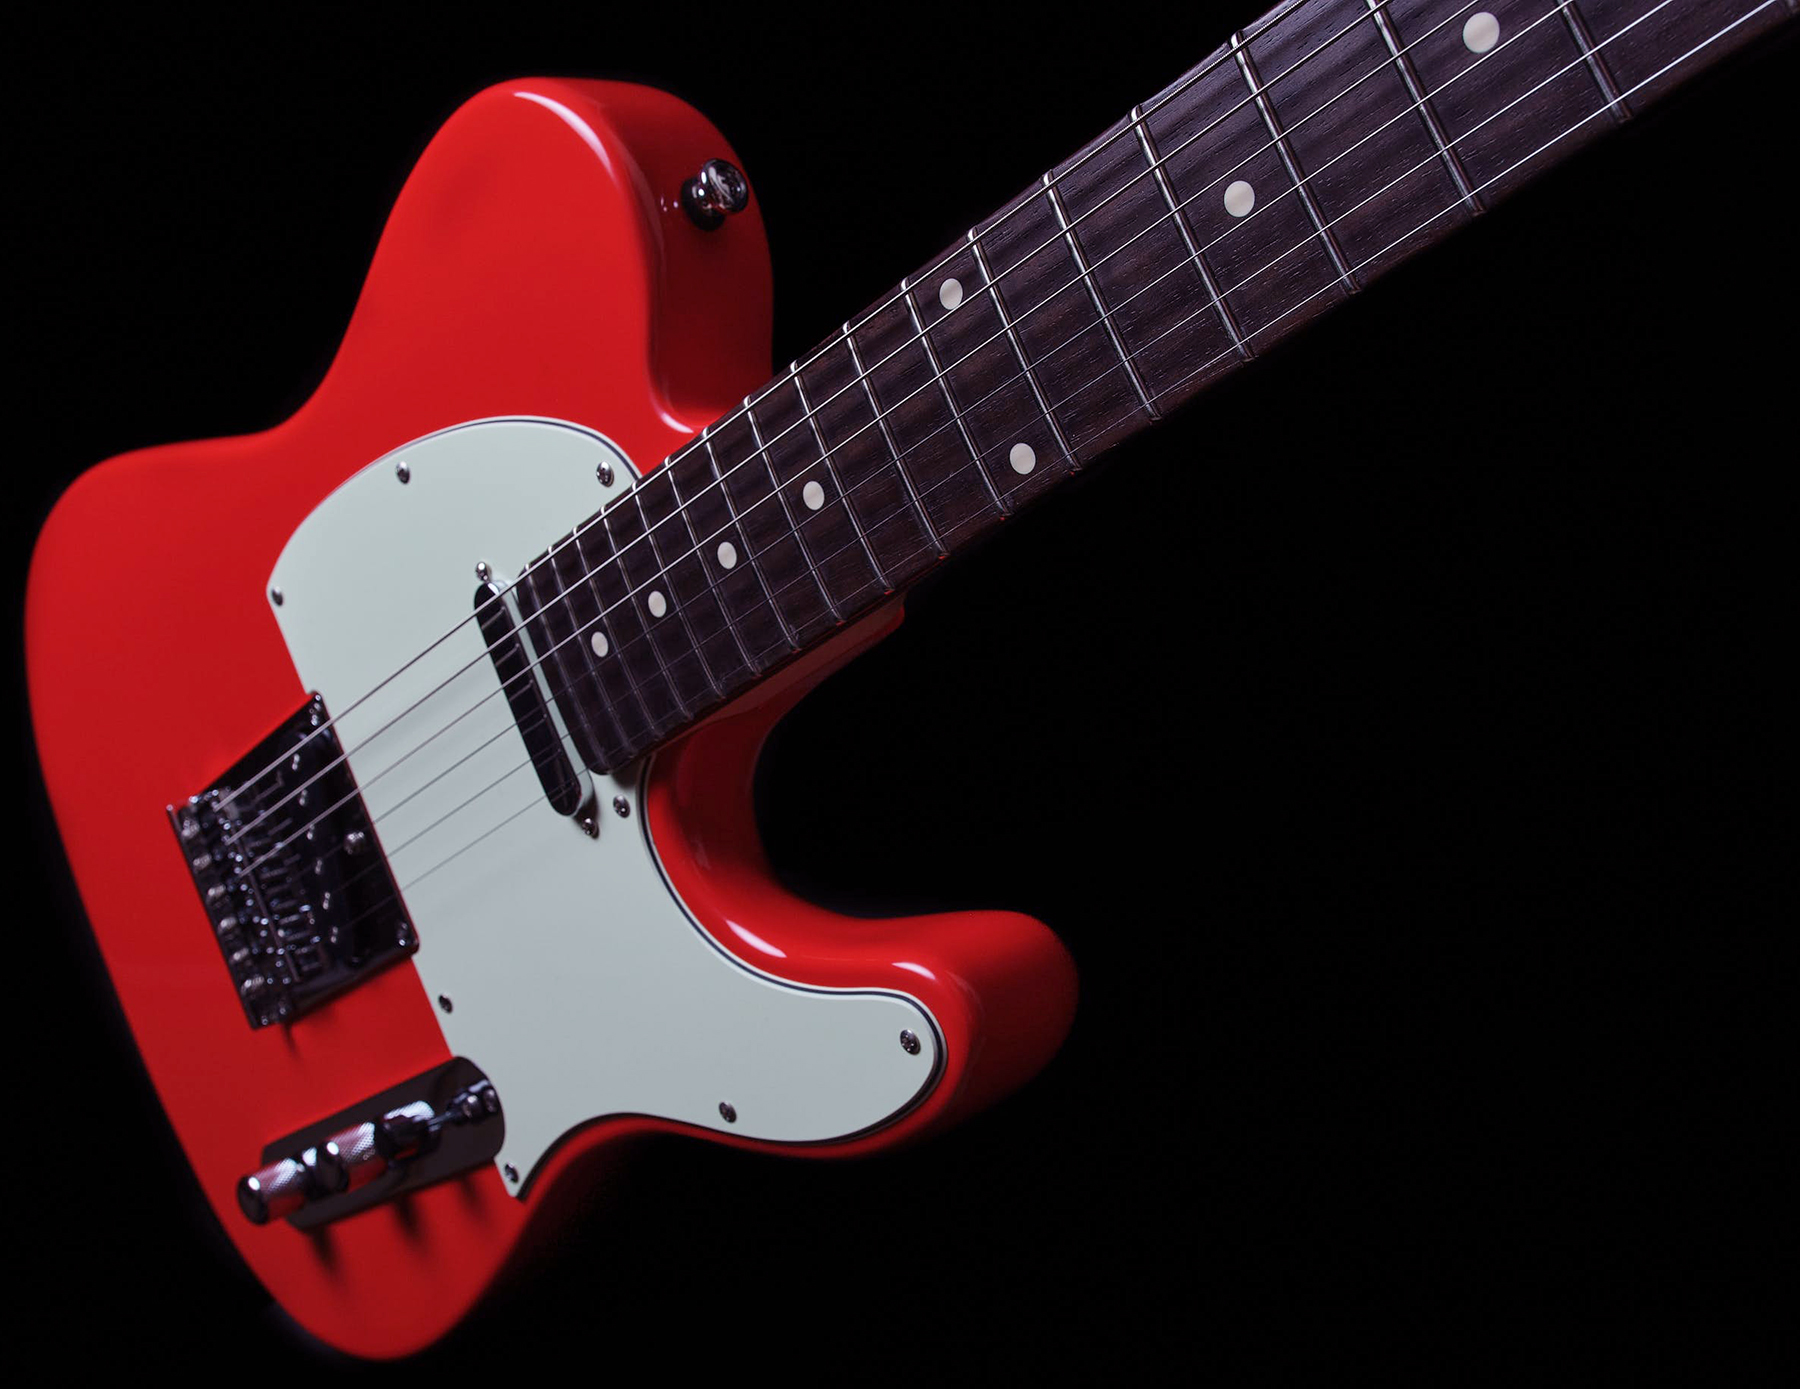 Sire Larry Carlton T3 Signature 2s Ht Rw - Dakota Red - Guitarra eléctrica con forma de tel - Variation 2